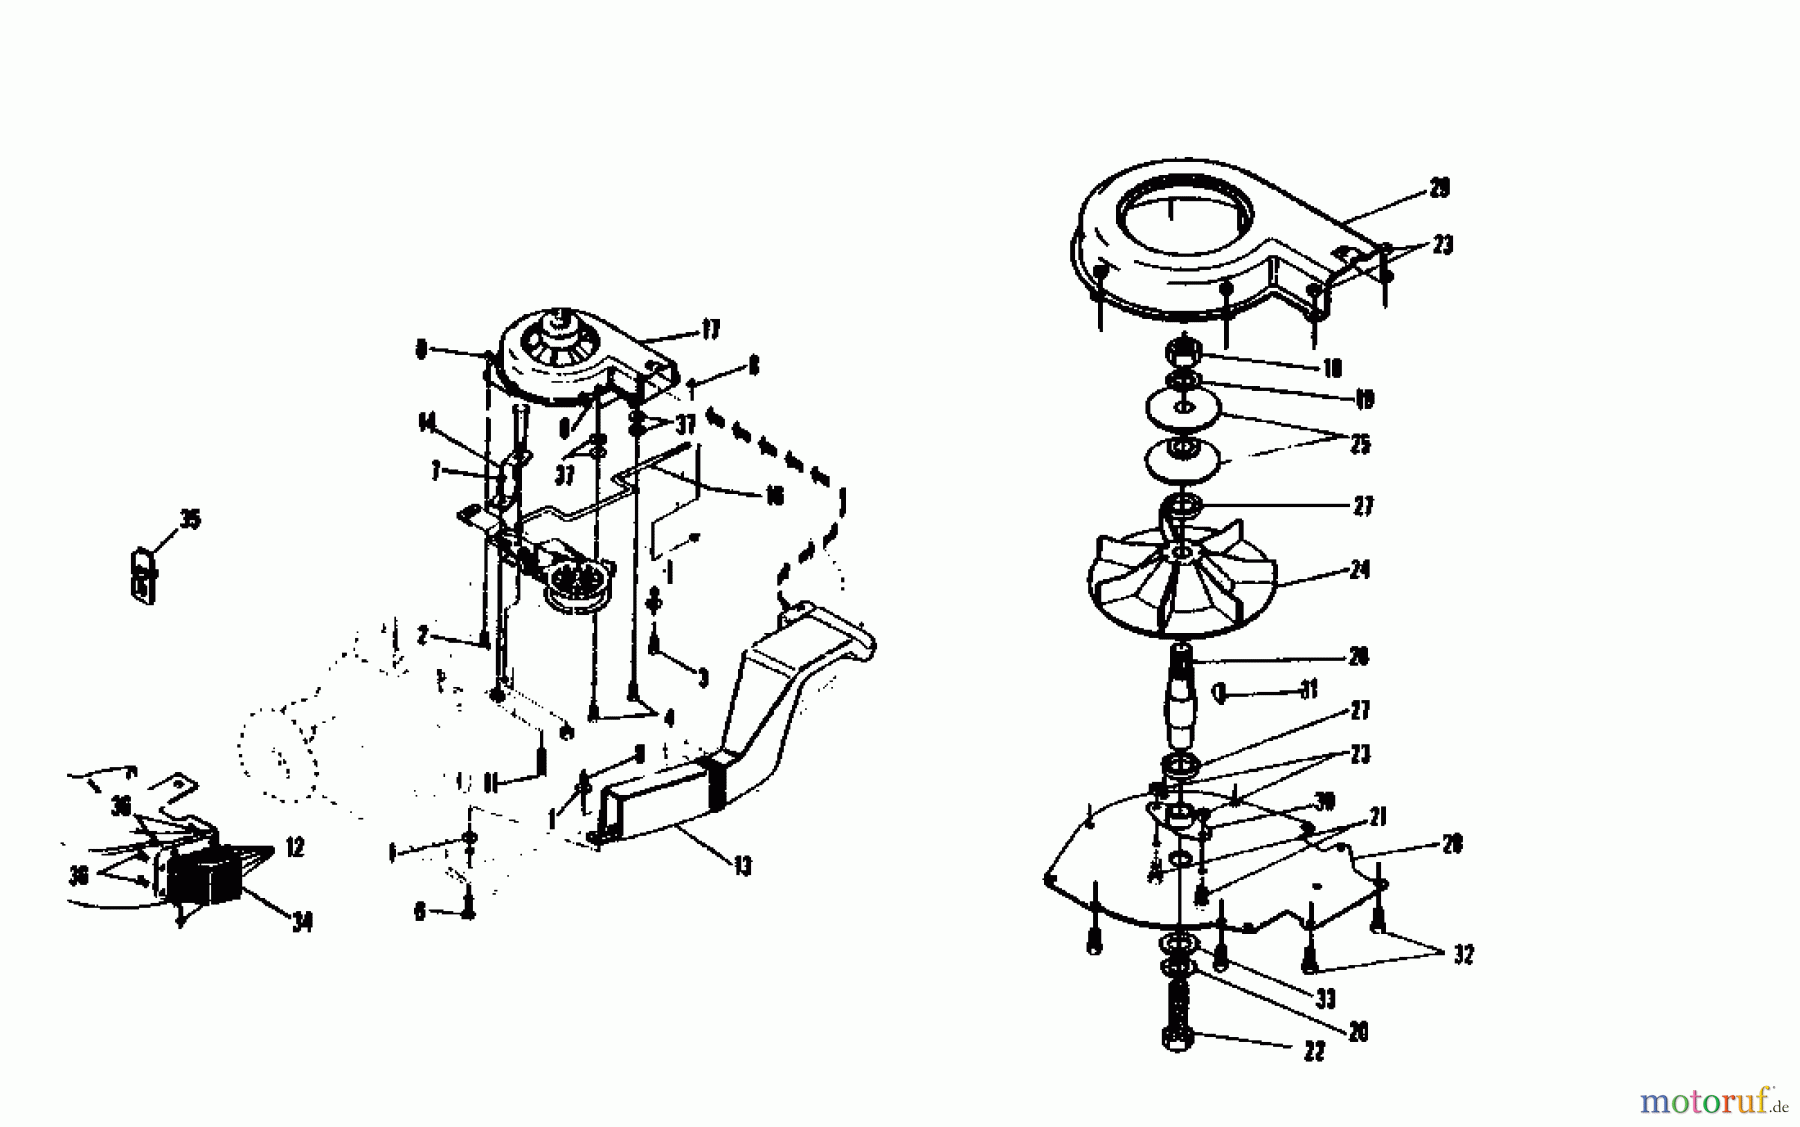  Gutbrod Rasentraktoren RSB 100-12 04015.02  (1993) Gebläsevorrichtung